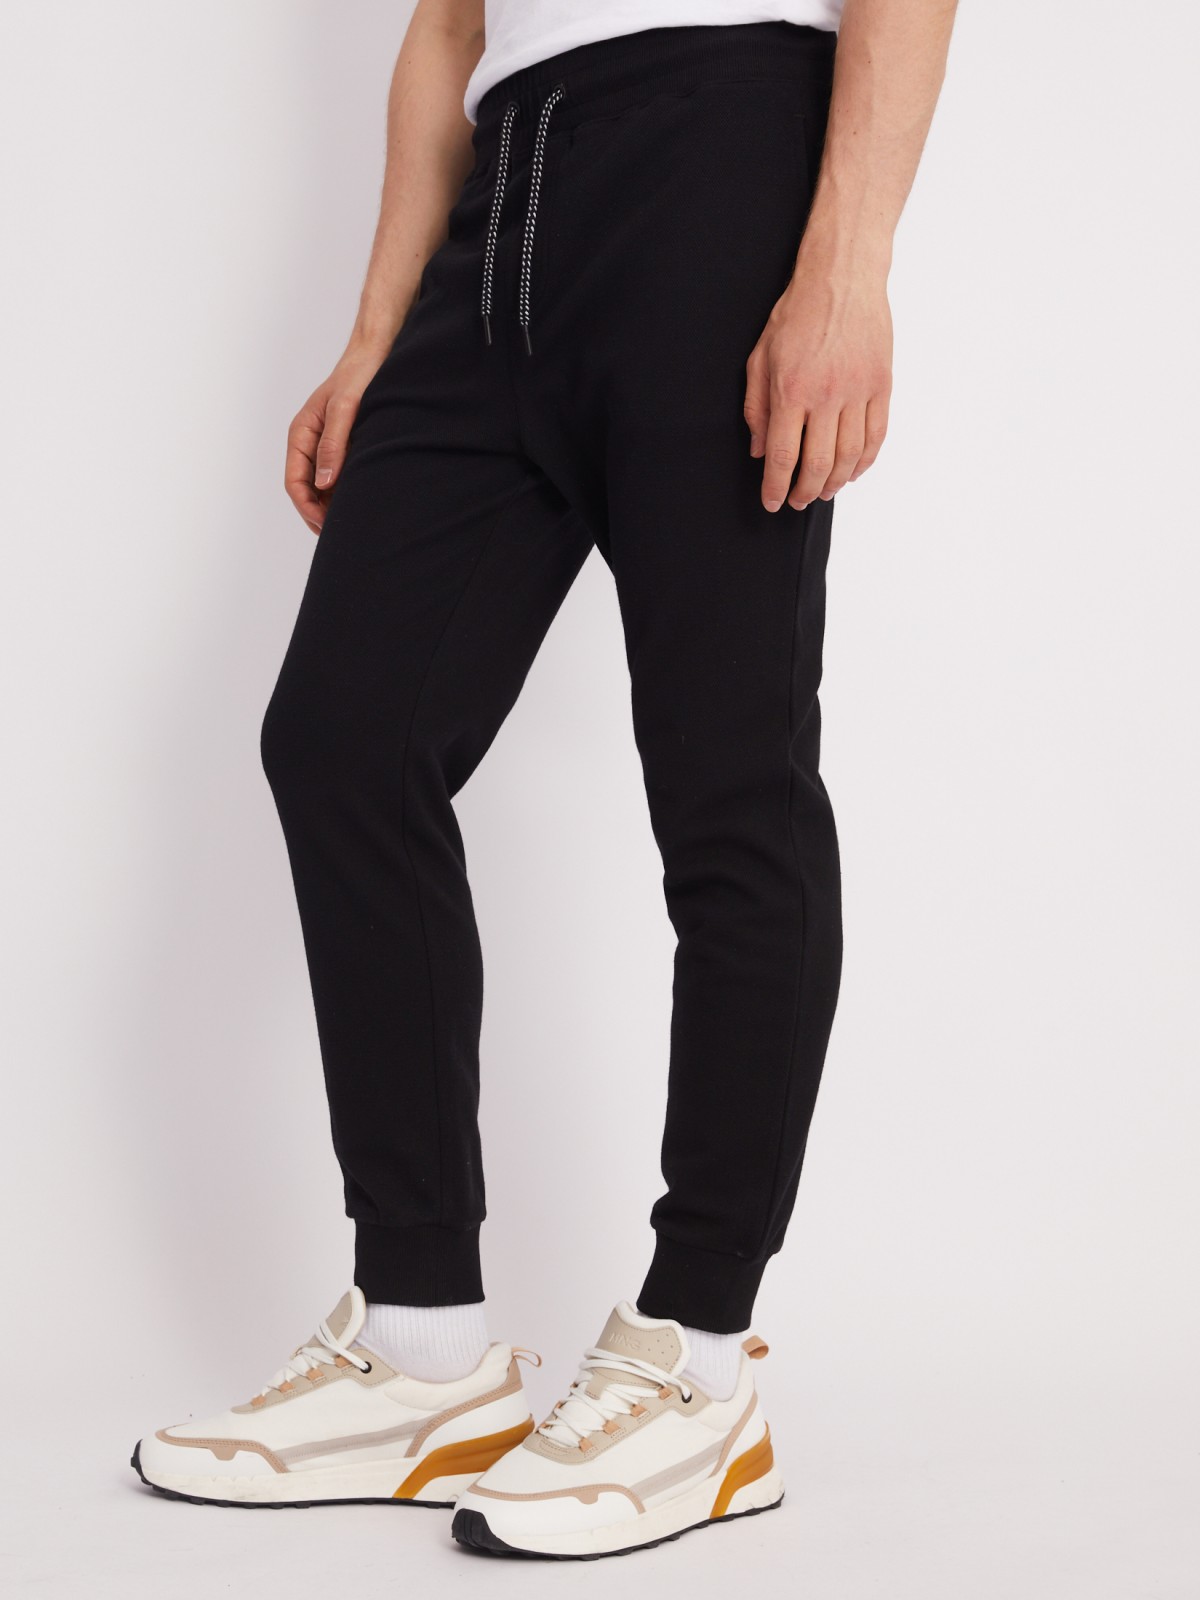 Трикотажные брюки-джоггеры в спортивном стиле zolla 21331762F012, цвет черный, размер M - фото 3